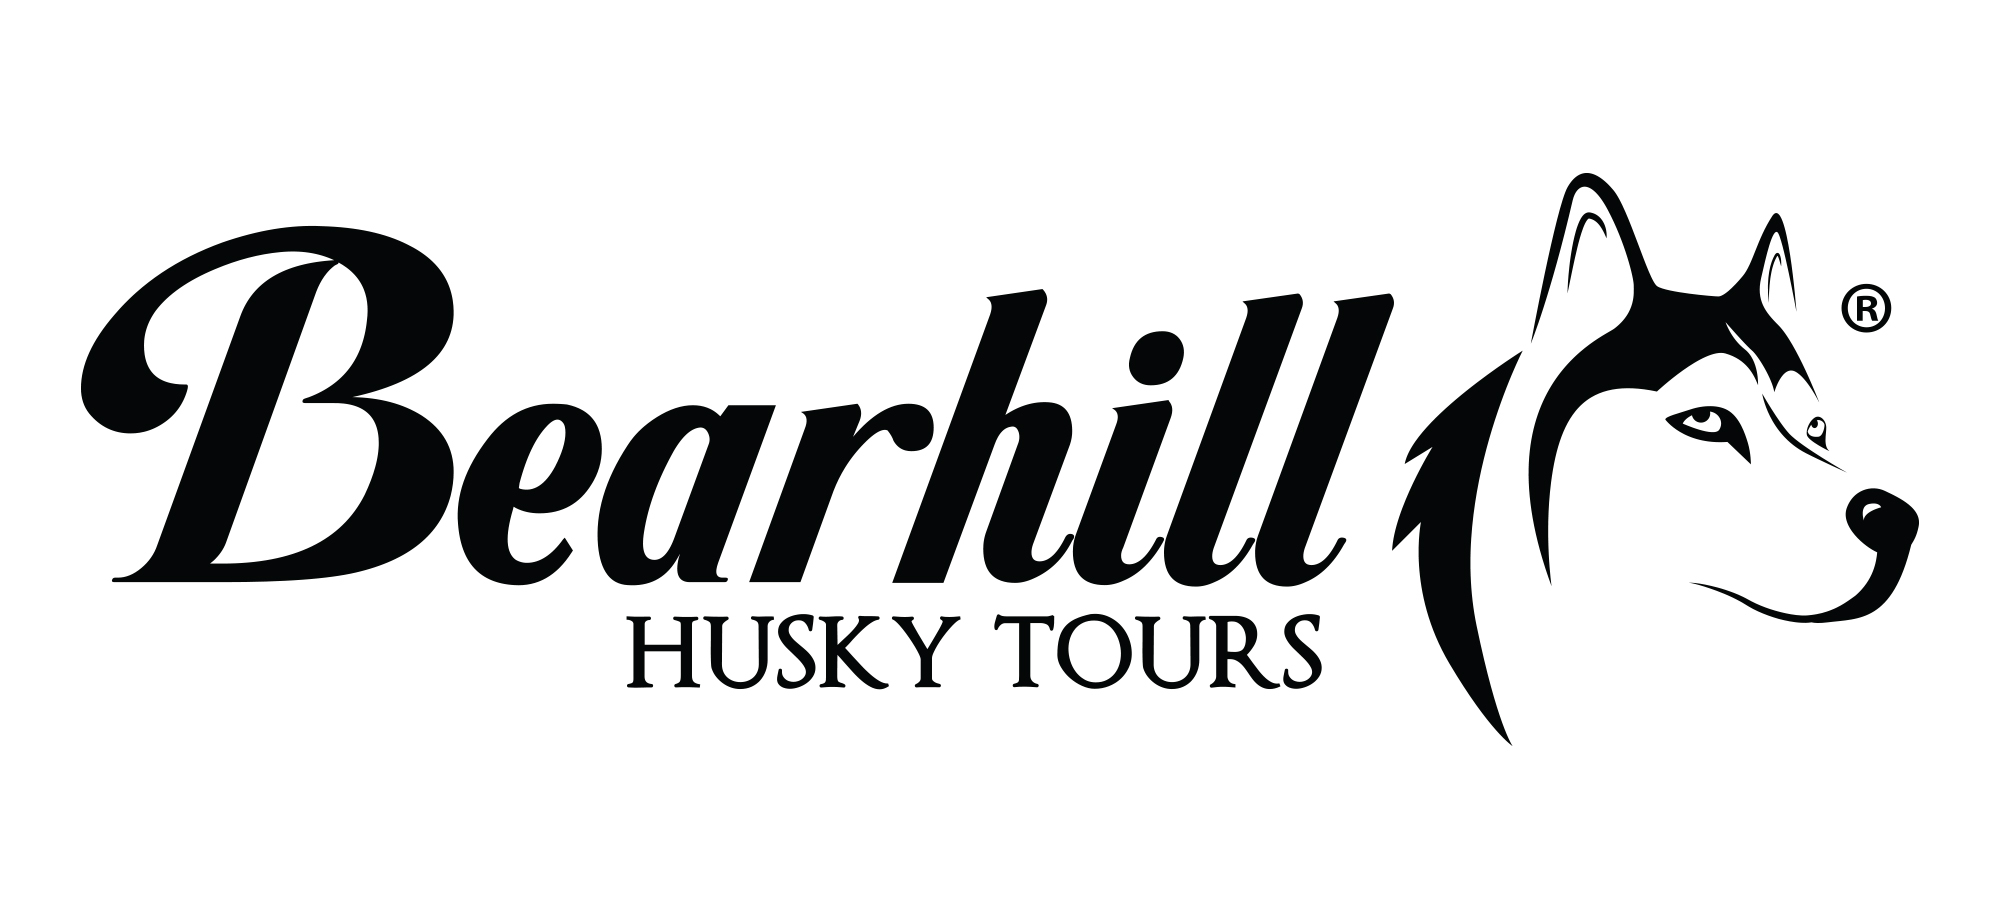 Bearhill Husky Tours on VUL kannattajajäsen